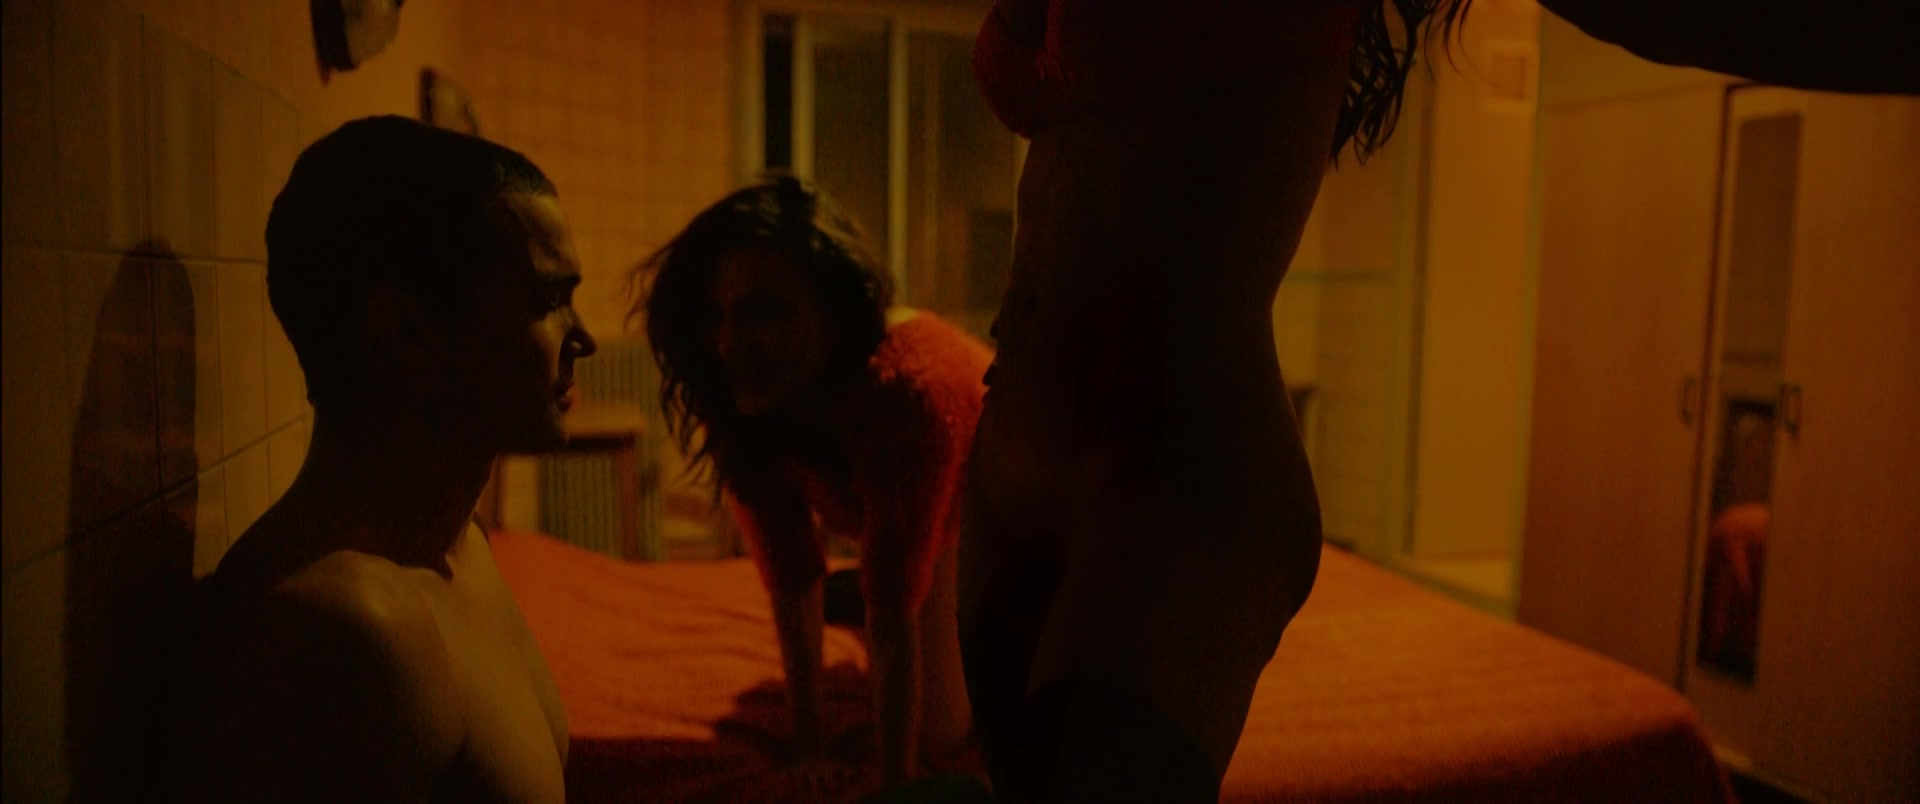 Stella Rocha - Love (2015) Nude movie scene.